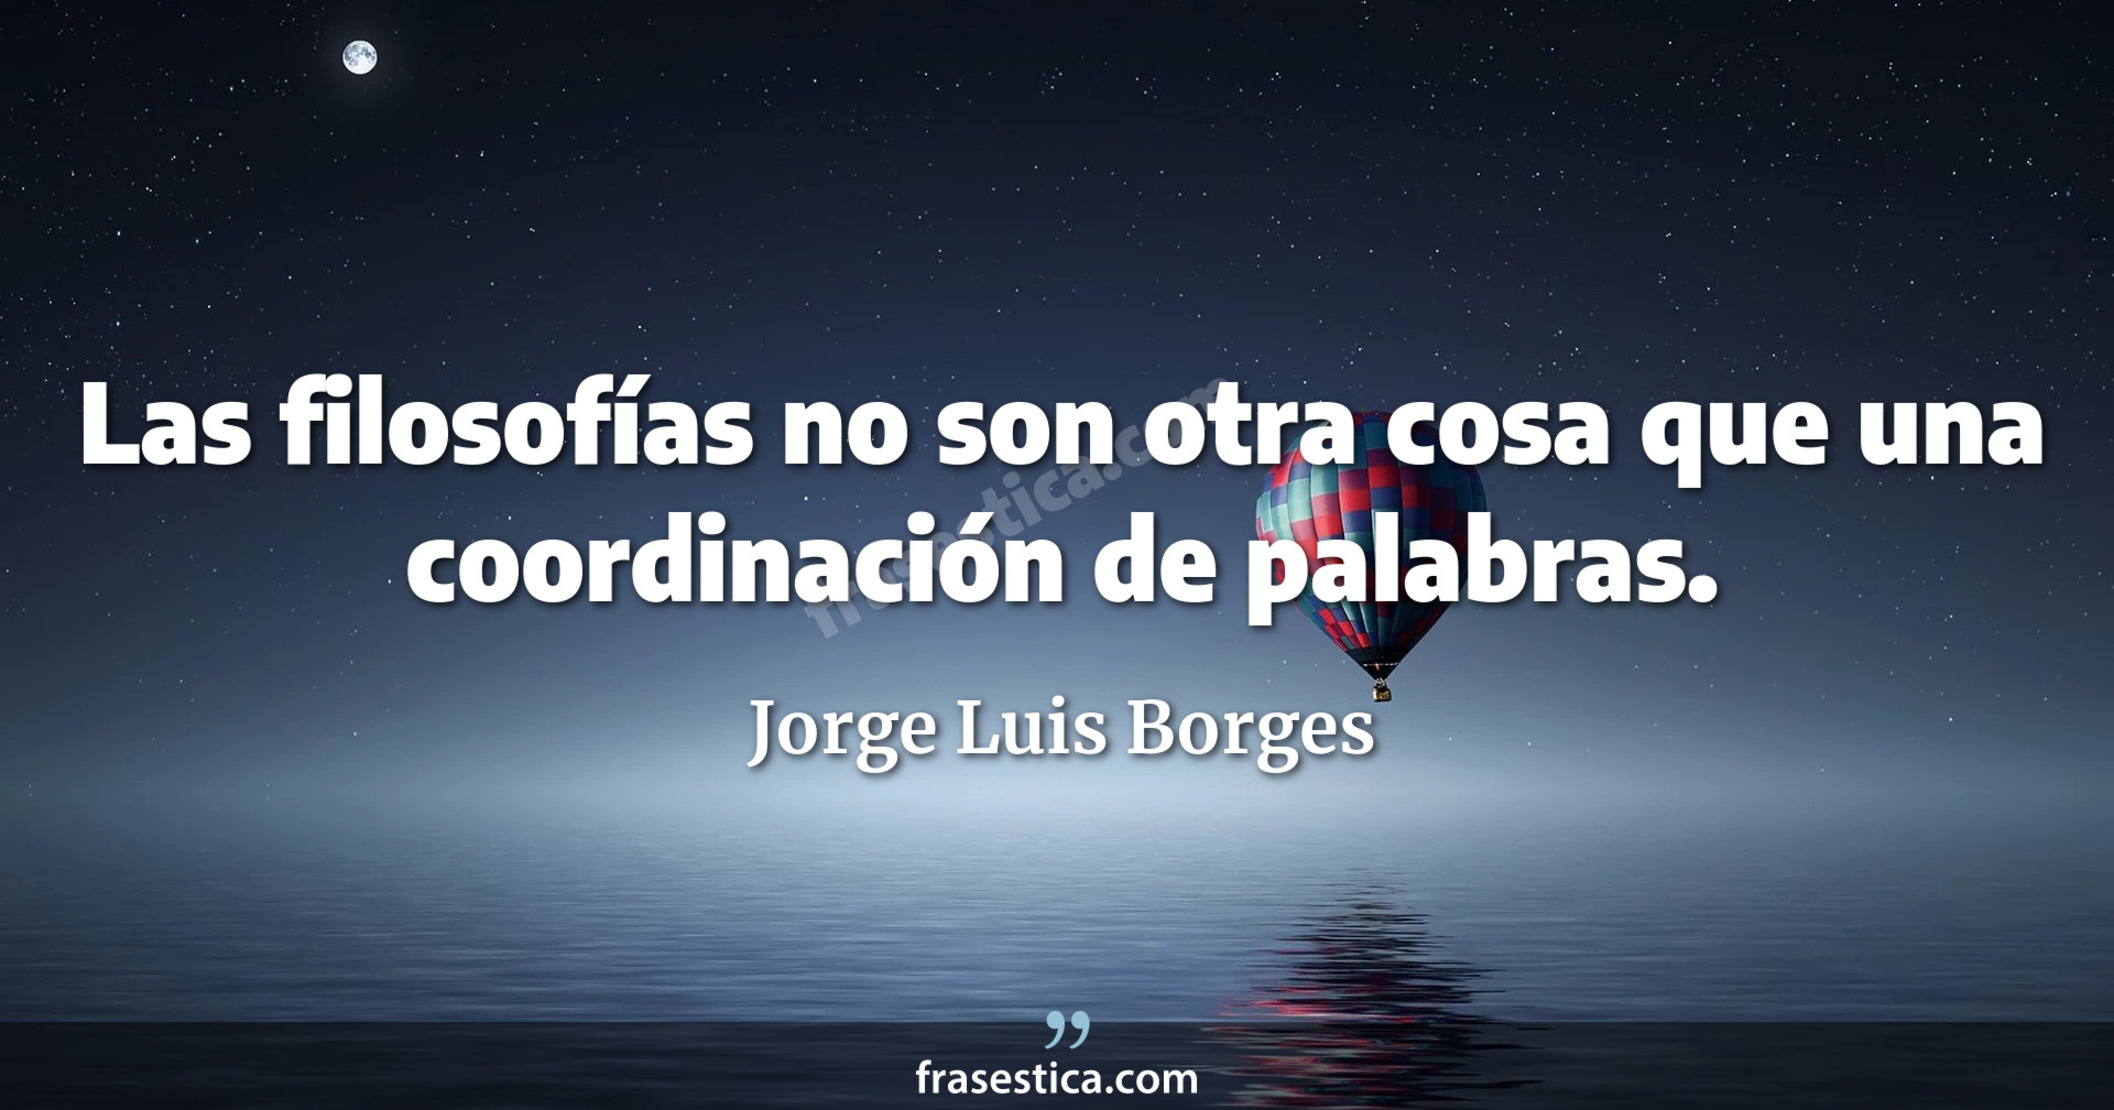 Las filosofías no son otra cosa que una coordinación de palabras. - Jorge Luis Borges